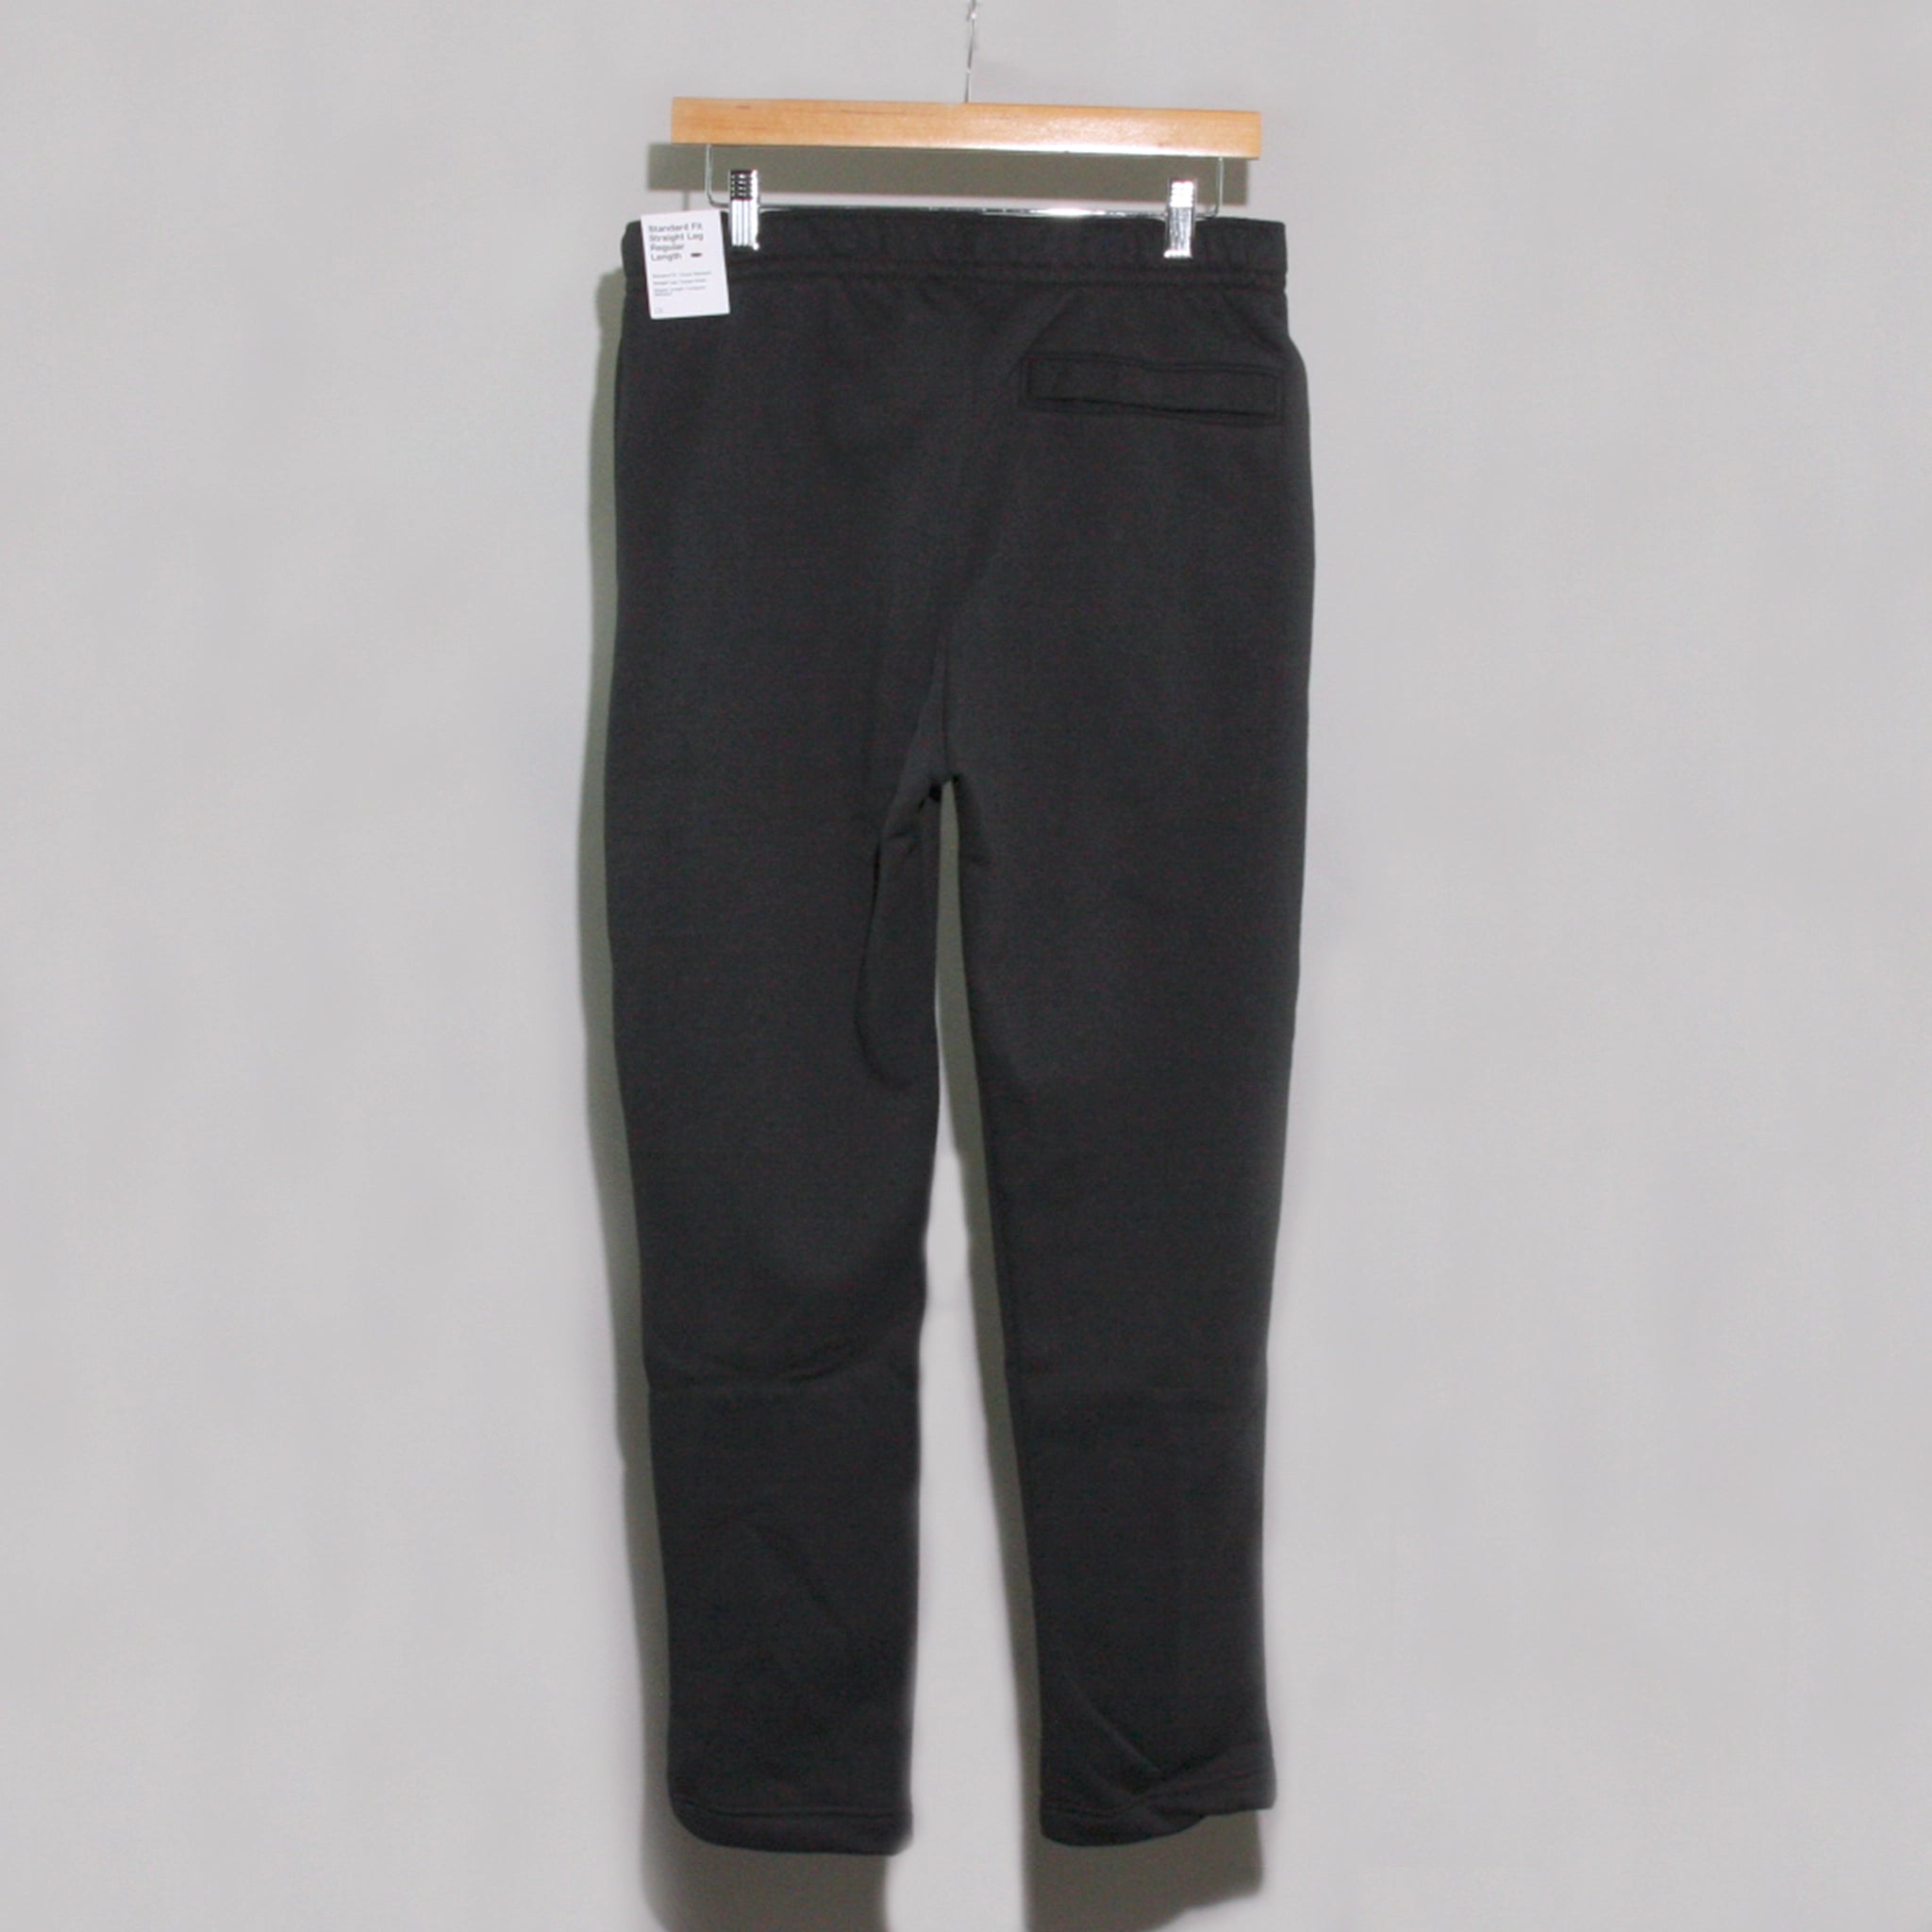 Nike Club Fleece Men's Sweatpants, Size L - Black (BV2707-010